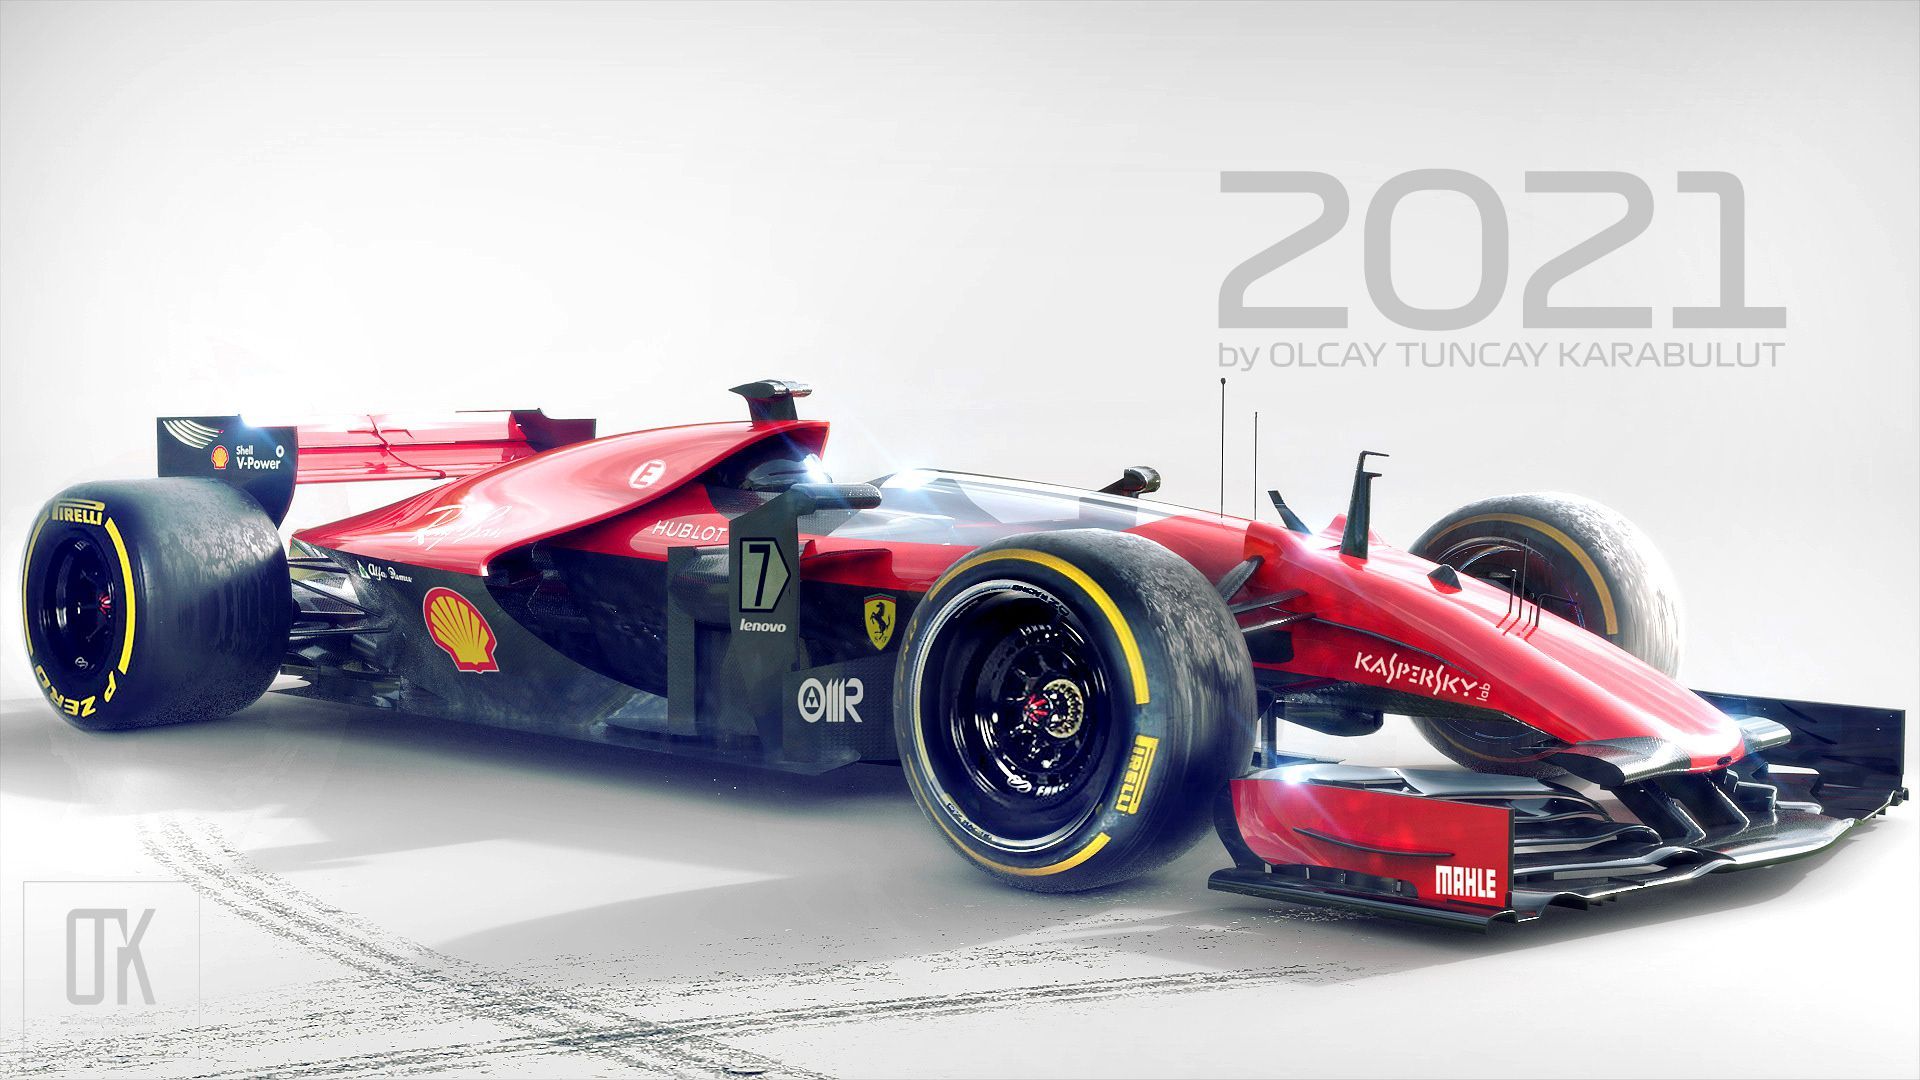 Hemen Projeme Göz Atın: Ferrari 2021 Concept Gallery 70306071 Ferrari 2021 Concept. Racing, Race Cars, Car